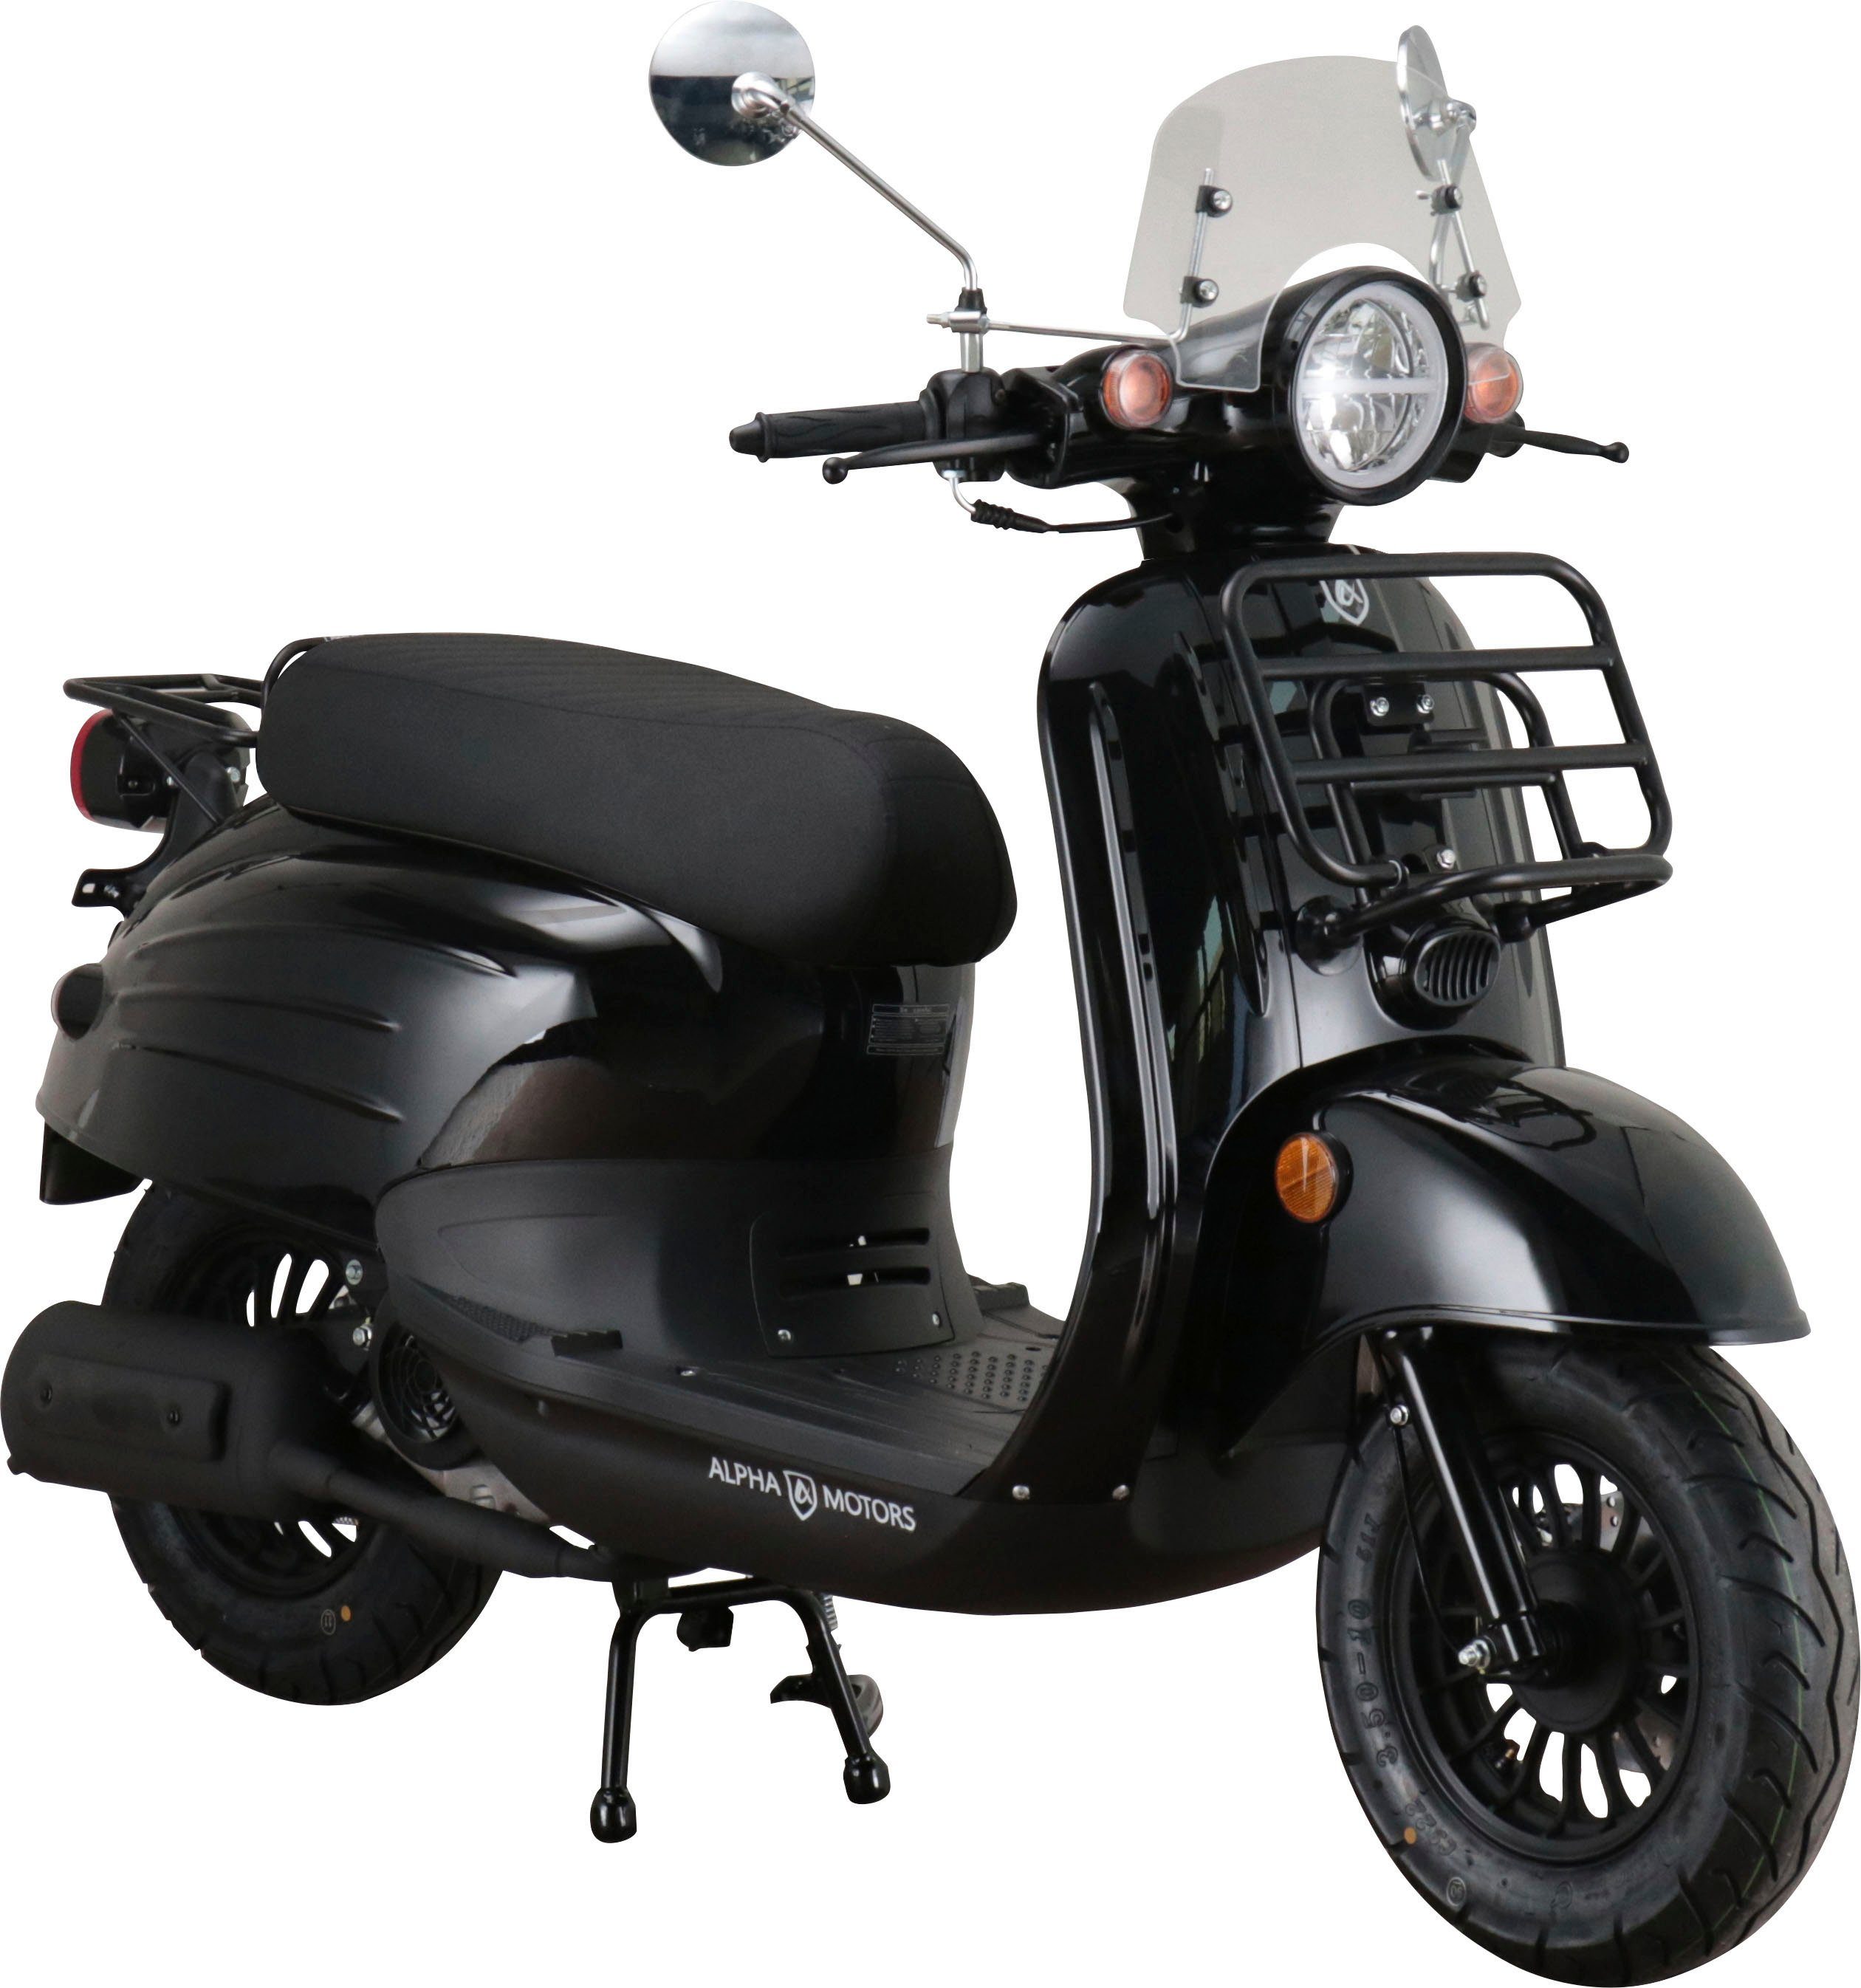 Alpha Motors Motorroller Adria, 50 ccm, 45 km/h, Euro 5, inkl. Windschild | Motorroller